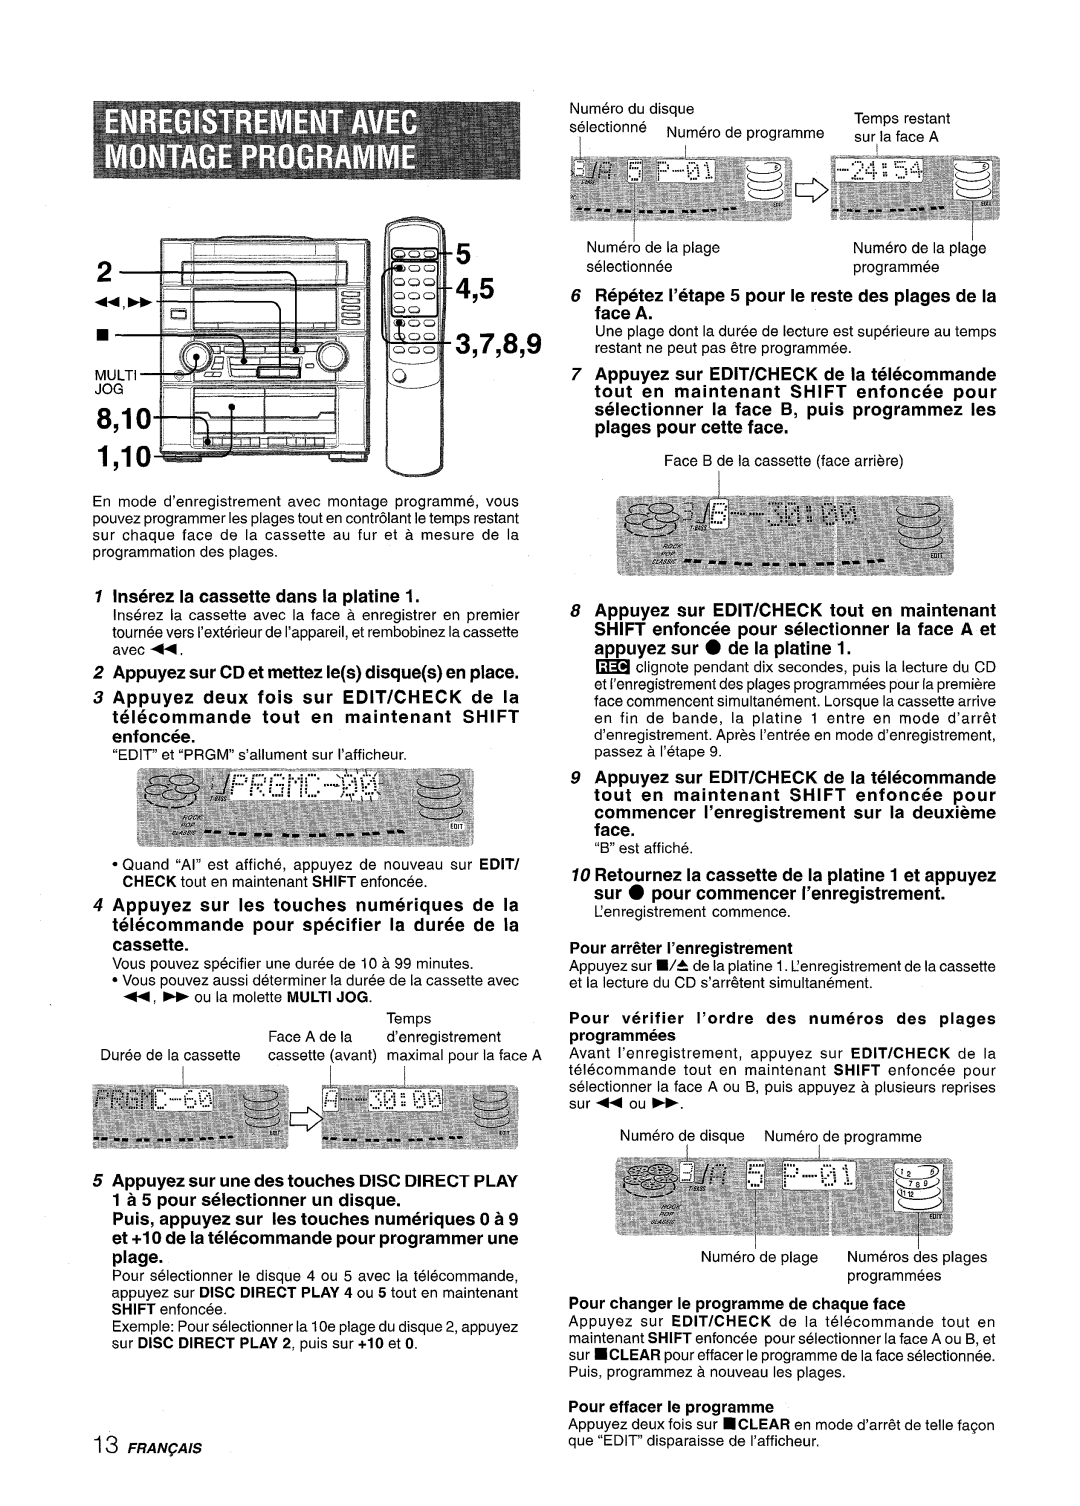 Aiwa Z-R555 manual 1,10“~~d”-’, 4,5 3,7,8,9 8,10- - ‘ r&ti....l 